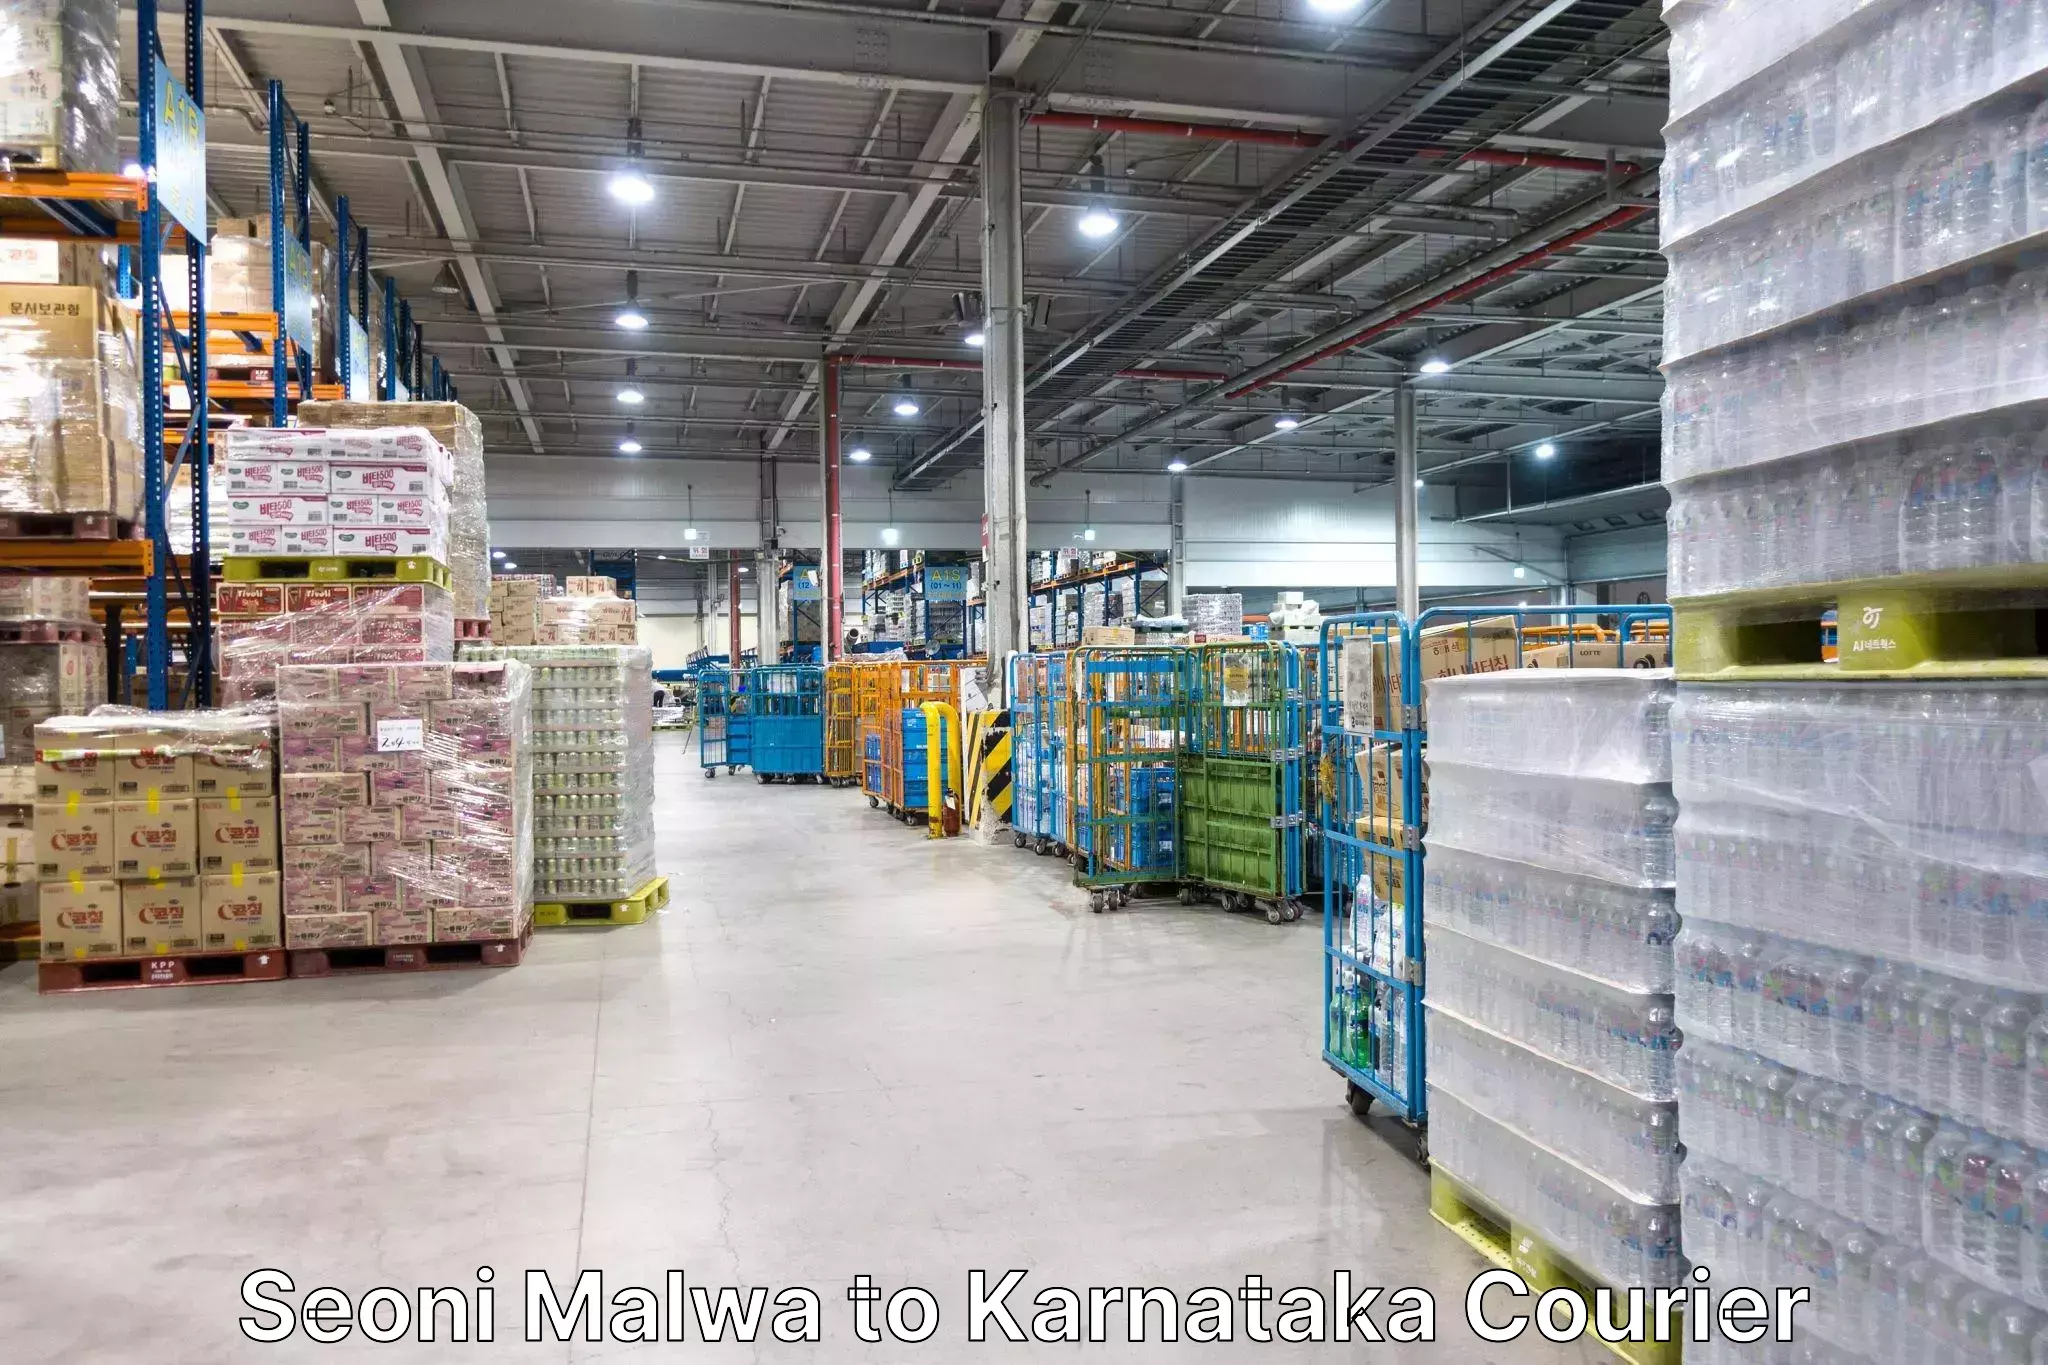 Luggage transport operations Seoni Malwa to Karnataka